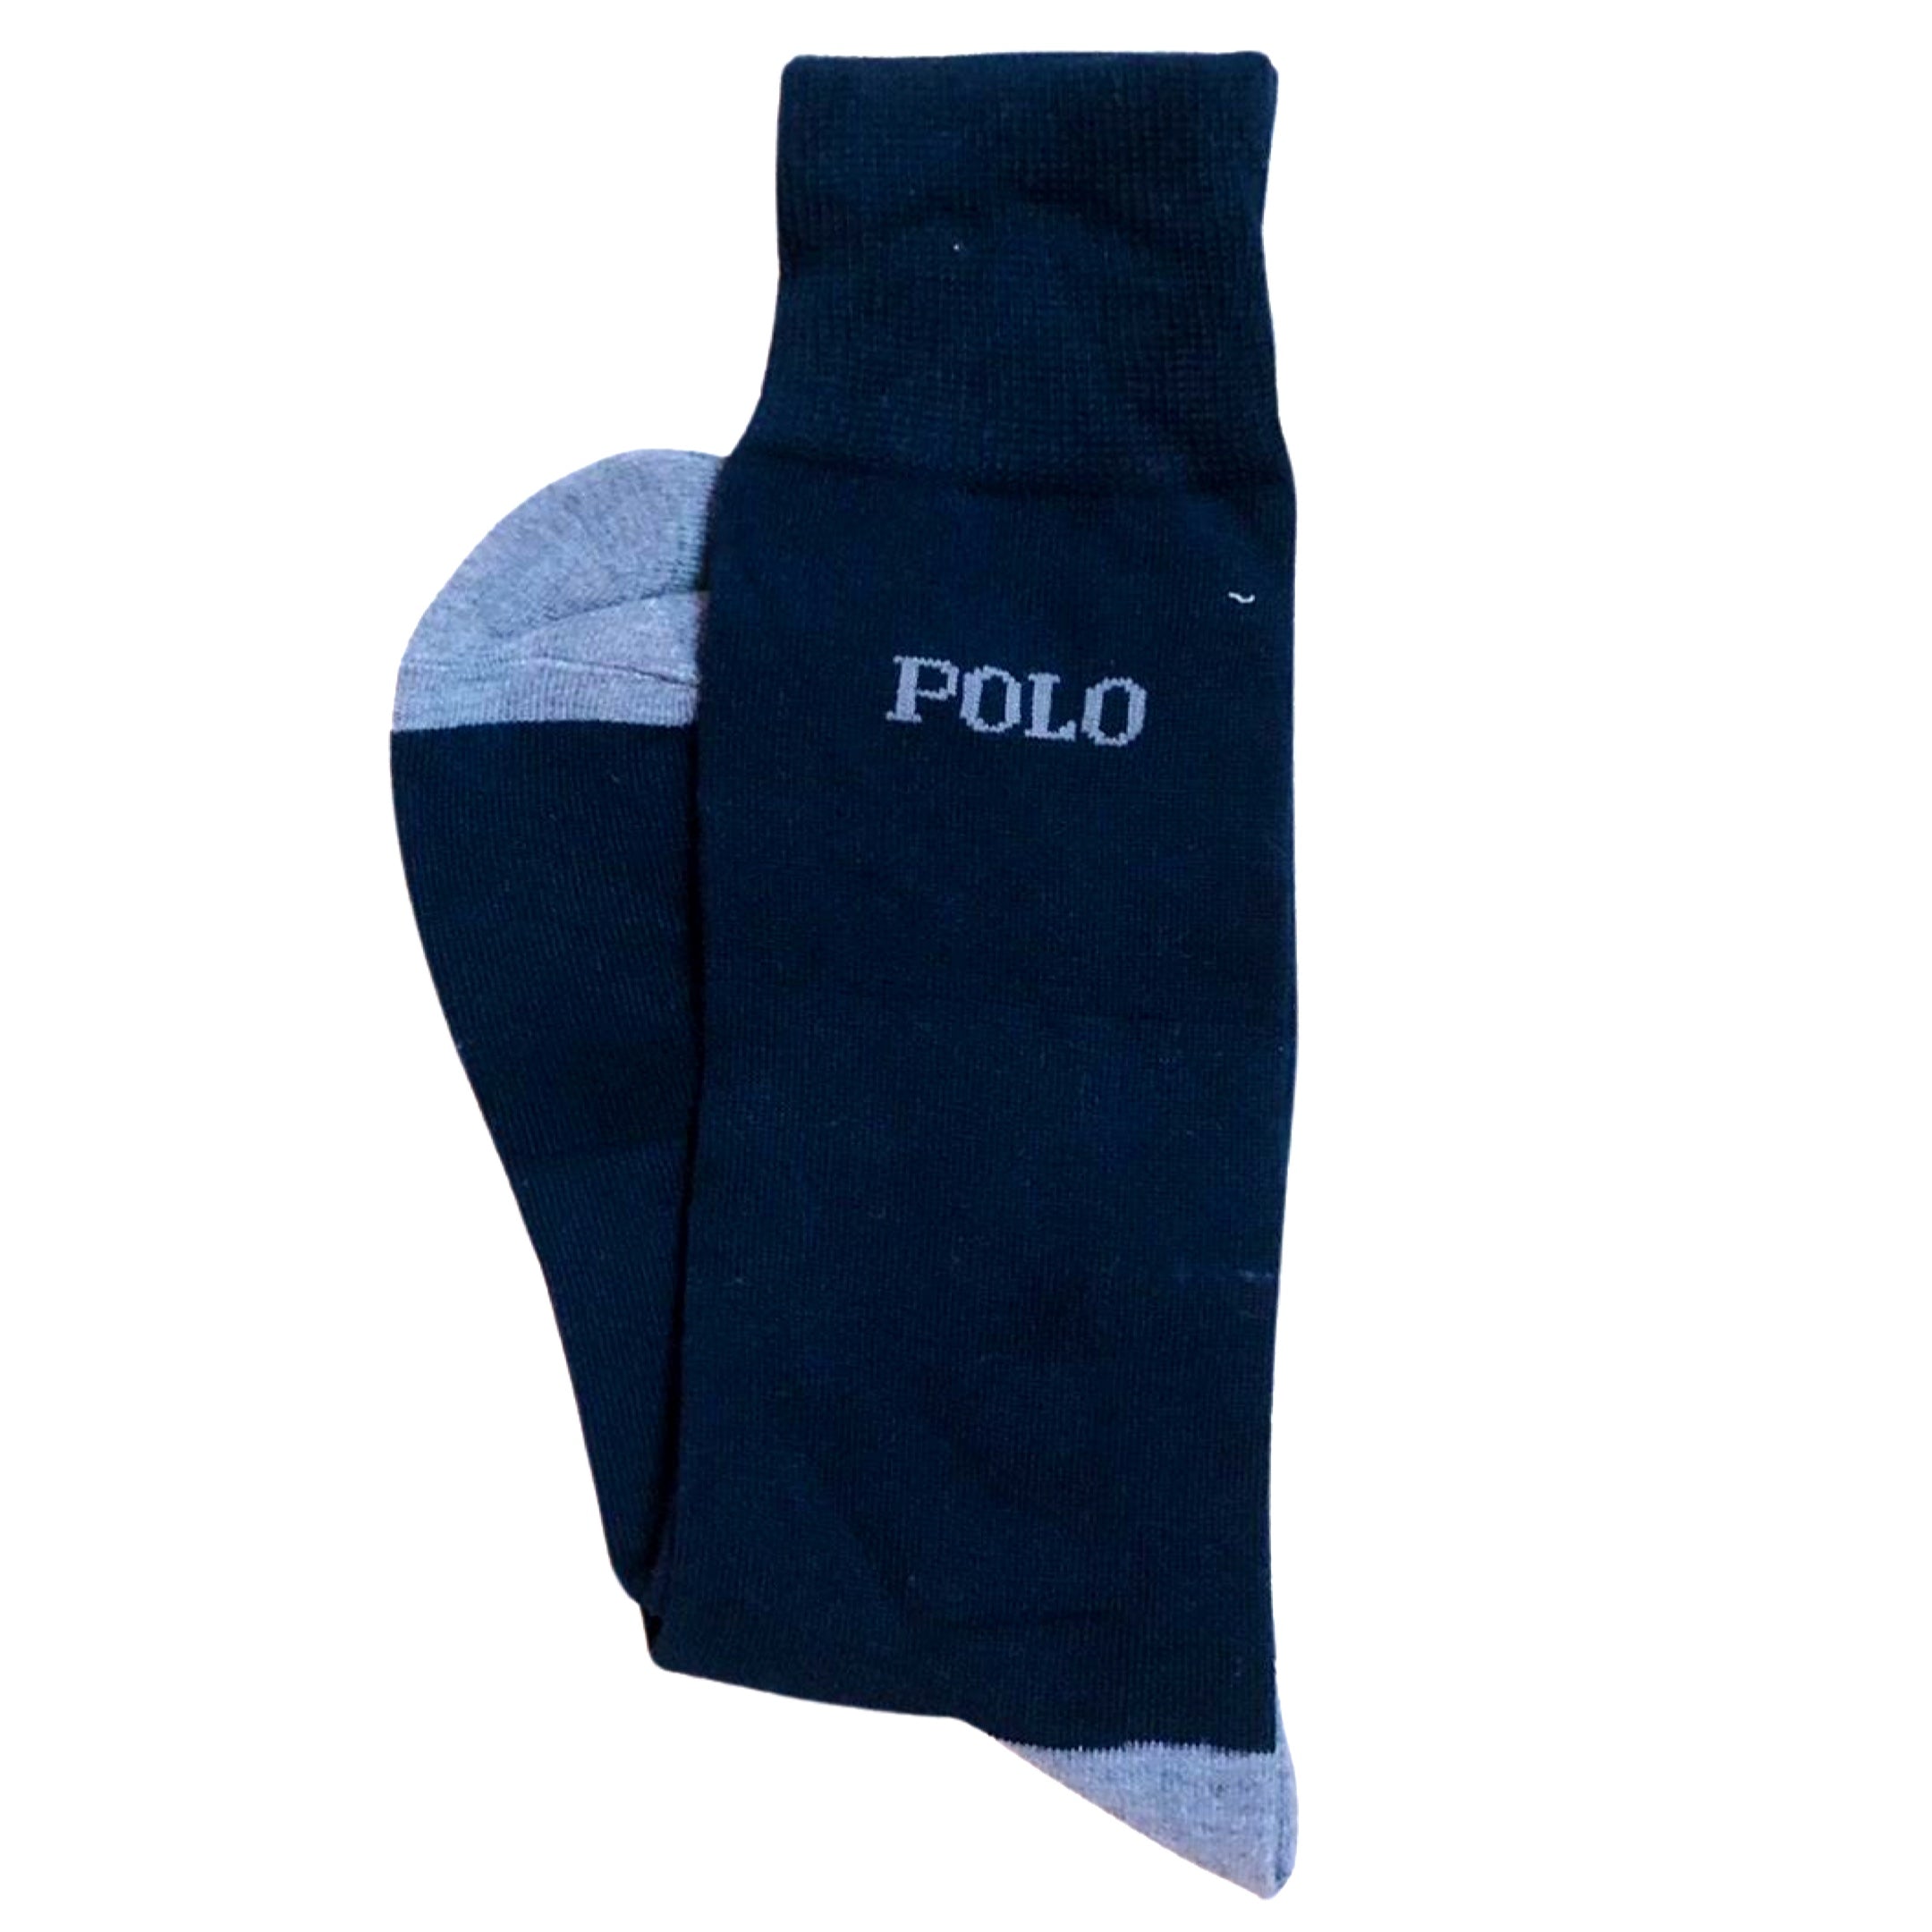 Polo Socks - Navy Blue & Grey Toe – WorkmenWear.pk